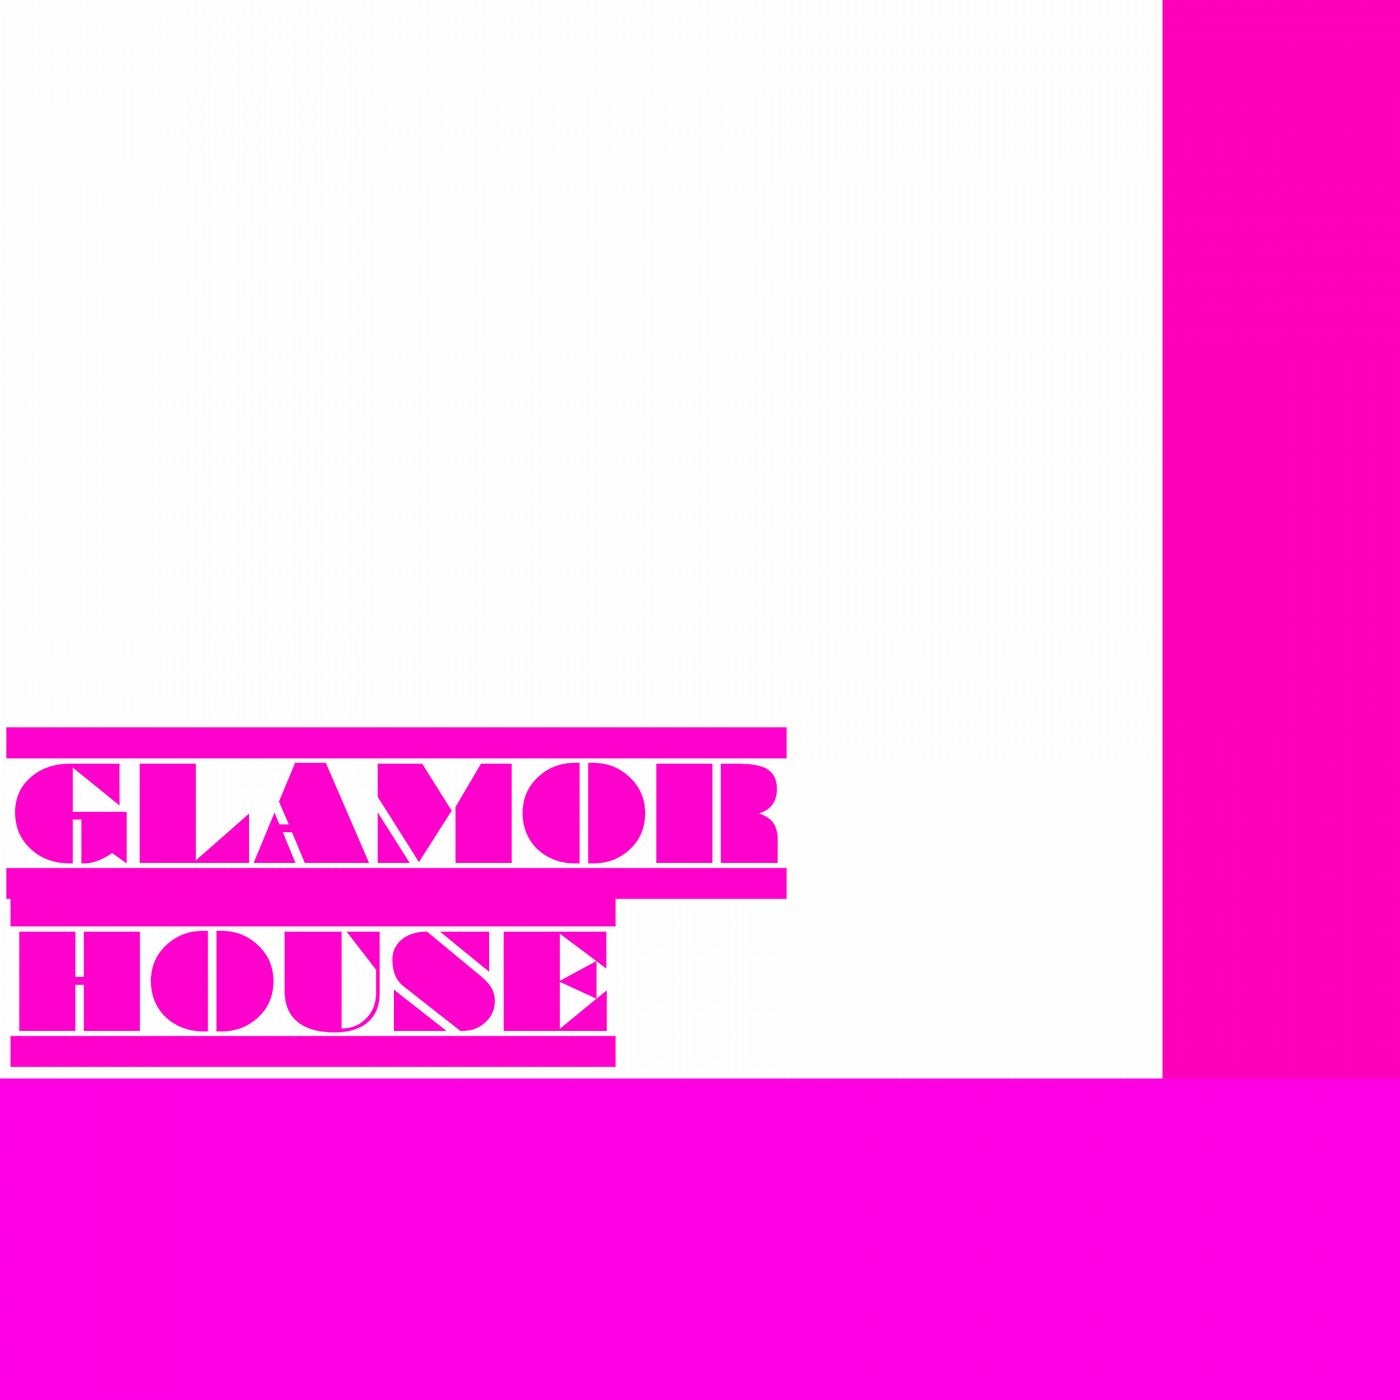 Glamor House